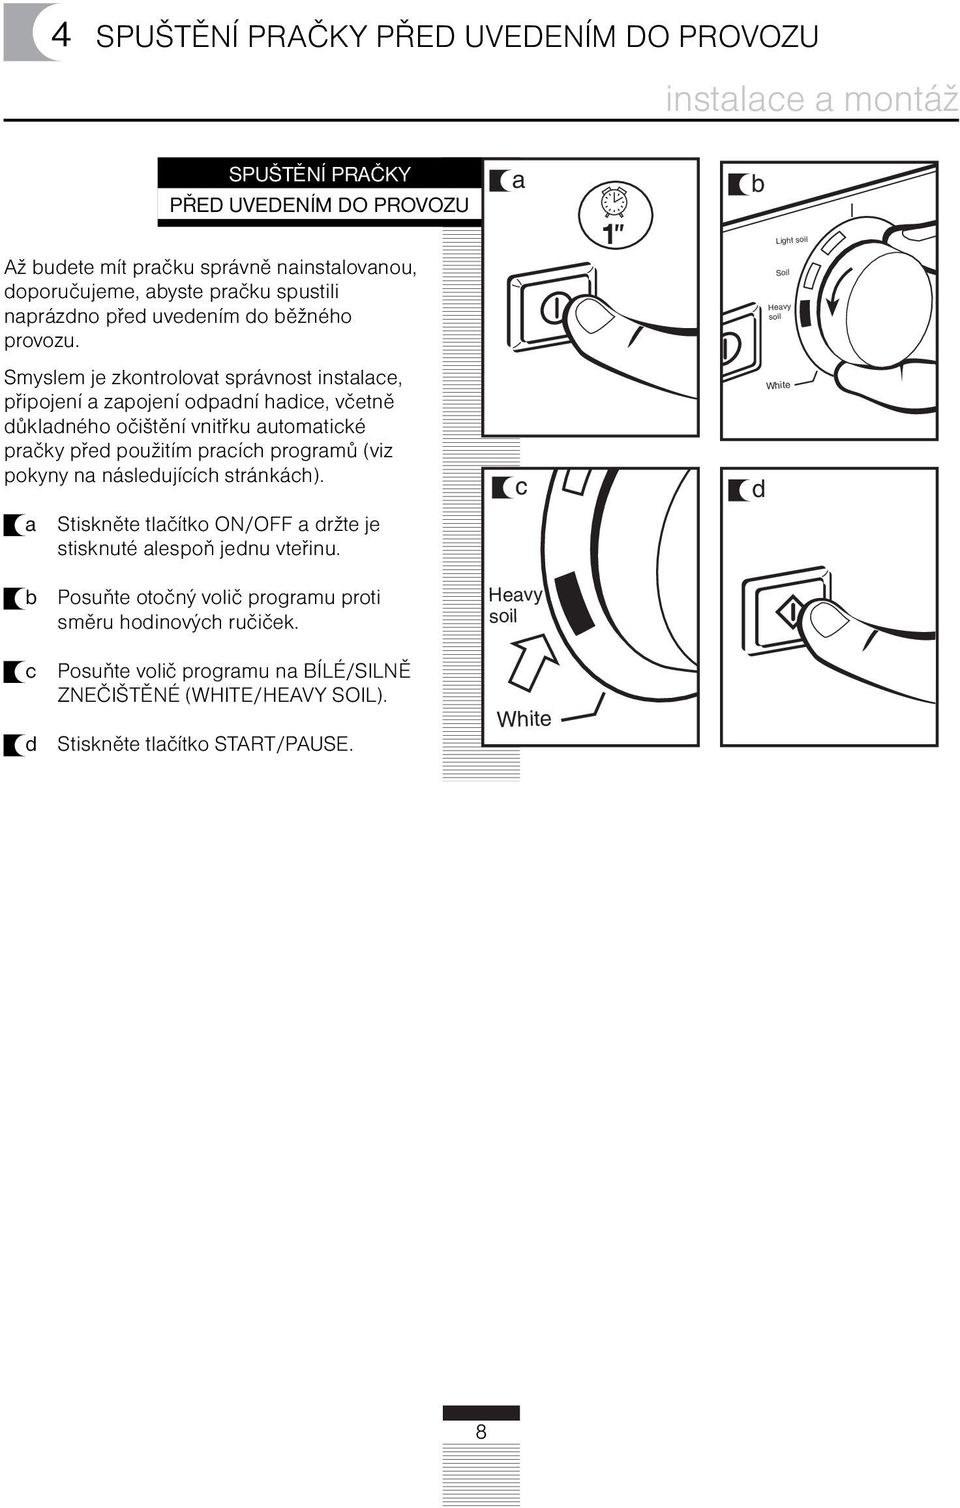 Smyslem je zkontrolovt správnost instlce, připojení zpojení odpdní hdice, včetně důkldného očištění vnitřku utomtické prčky před použitím prcích progrmů (viz pokyny